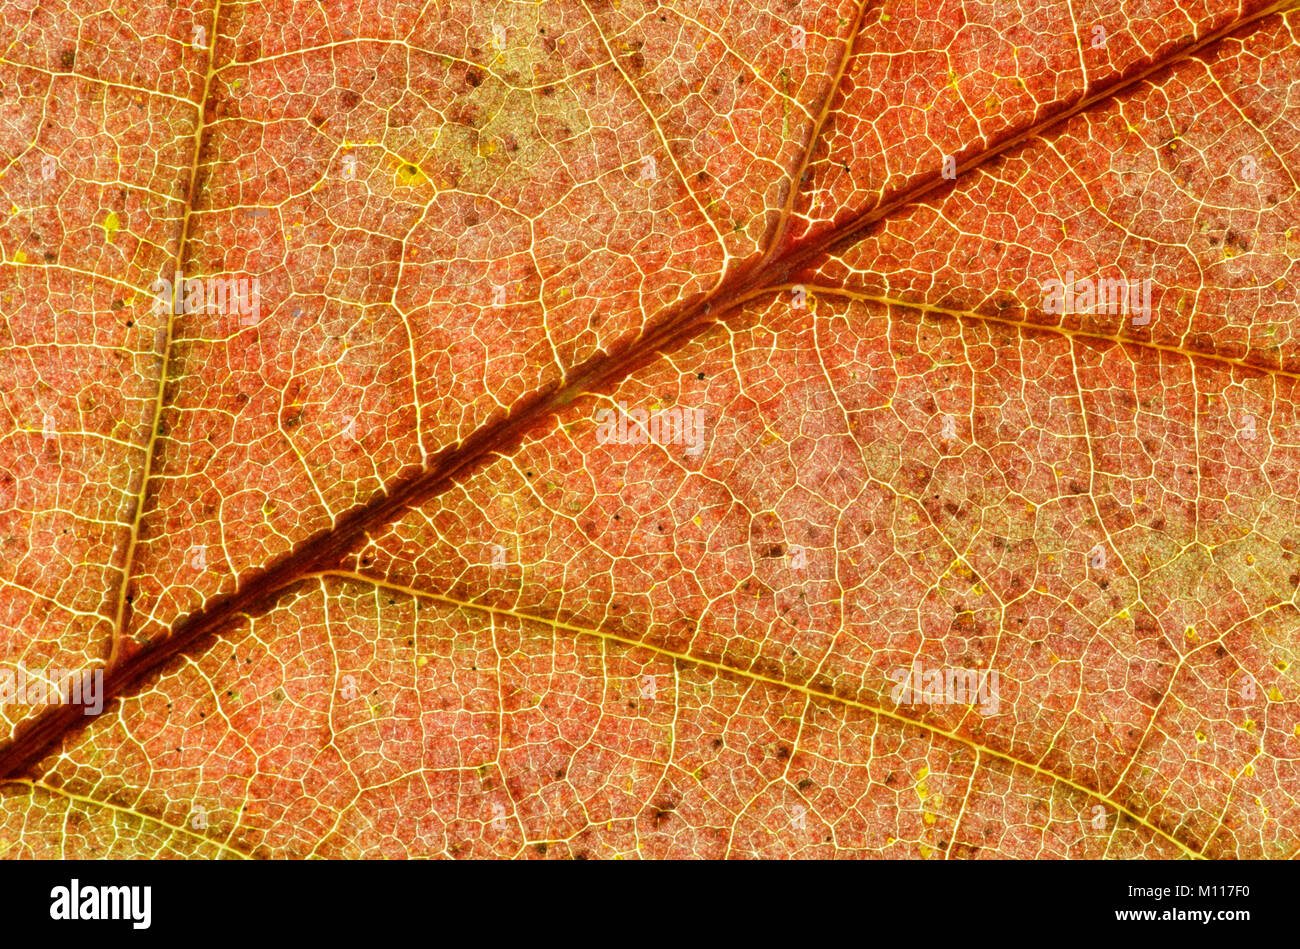 Le chêne rouge, feuilles en automne / (Quercus rubra) | Roteiche, Blattdetail / im Herbst (Quercus rubra) Banque D'Images